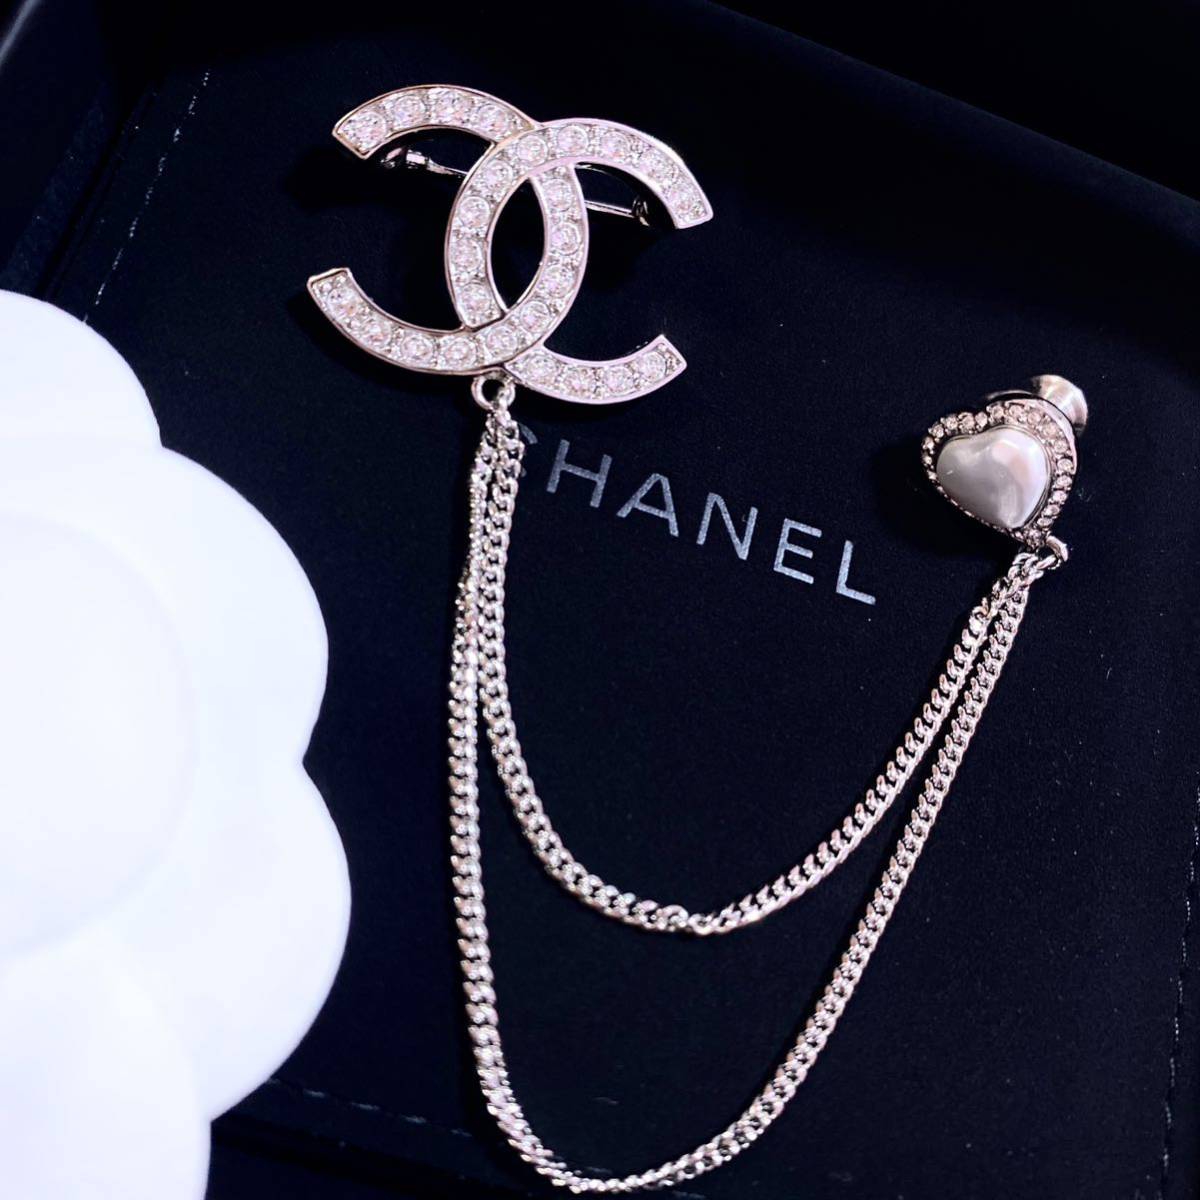  внутренний фирменный магазин покупка Chanel Heart жемчуг стразы 2 полосный брошь CHANEL